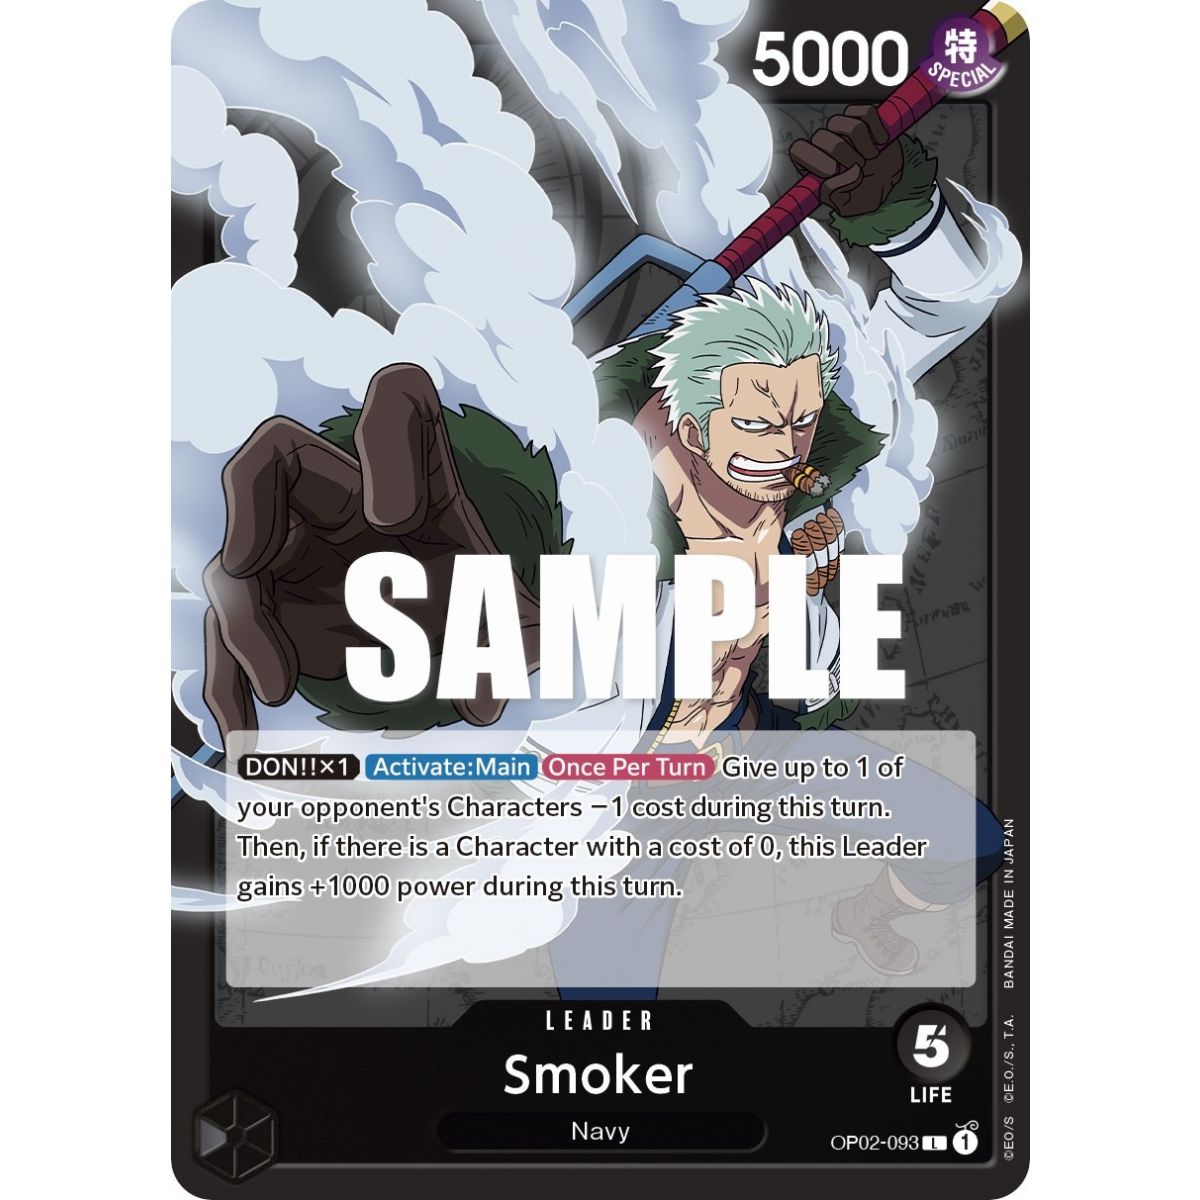 Smoker (093) - L  OP02-093 - OP02 Paramount War